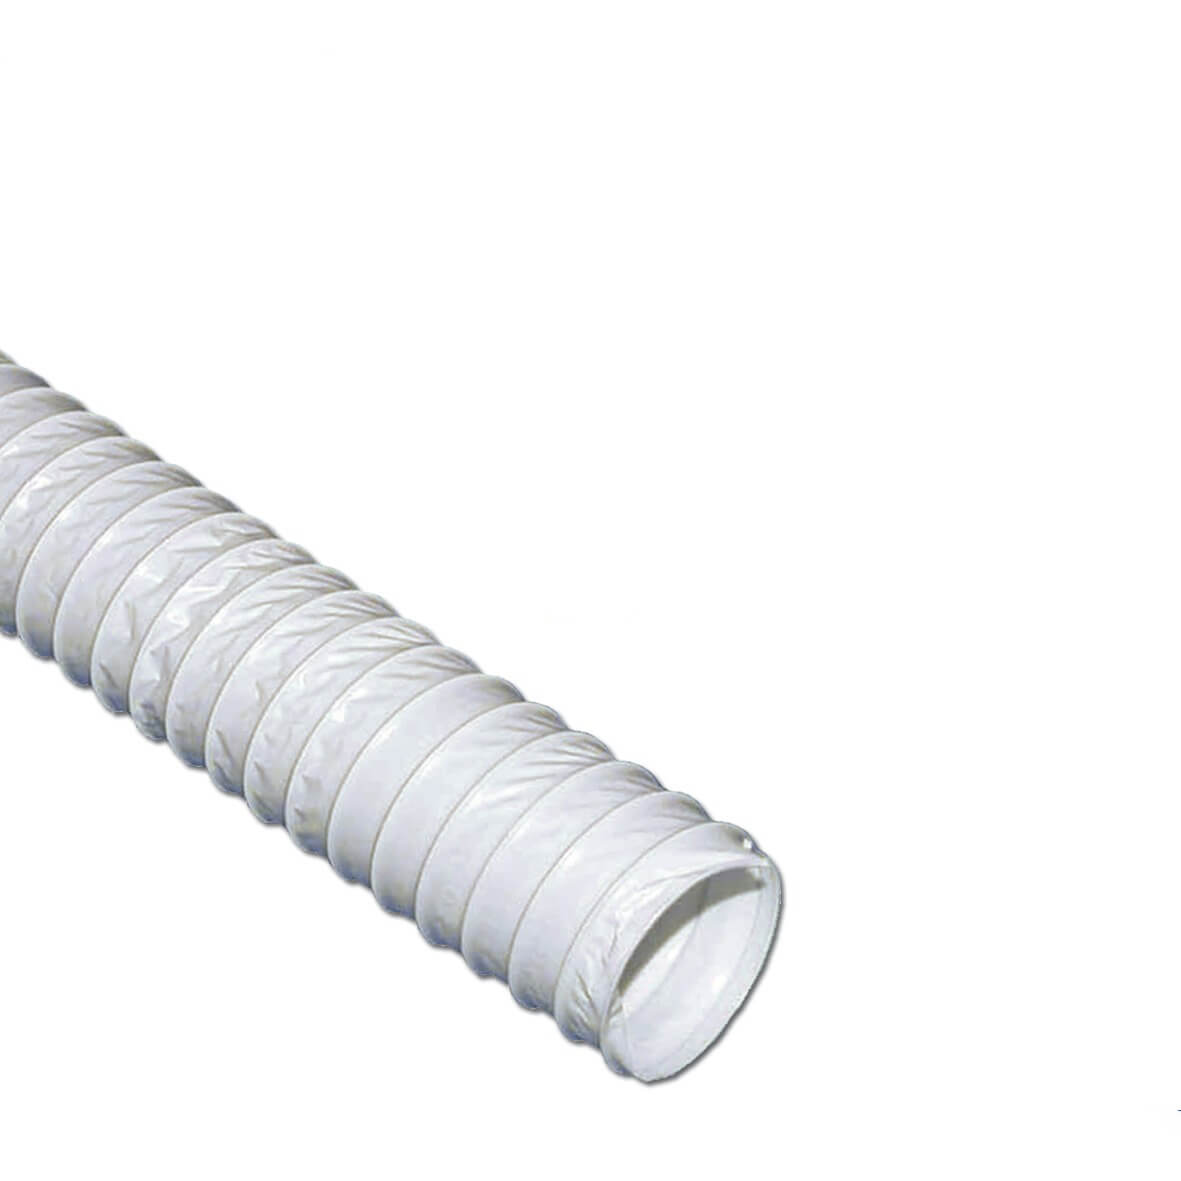 Abluftschlauch 100er rund 2, 5m PVC weiß für Ablufttrockner (KD-10006176)